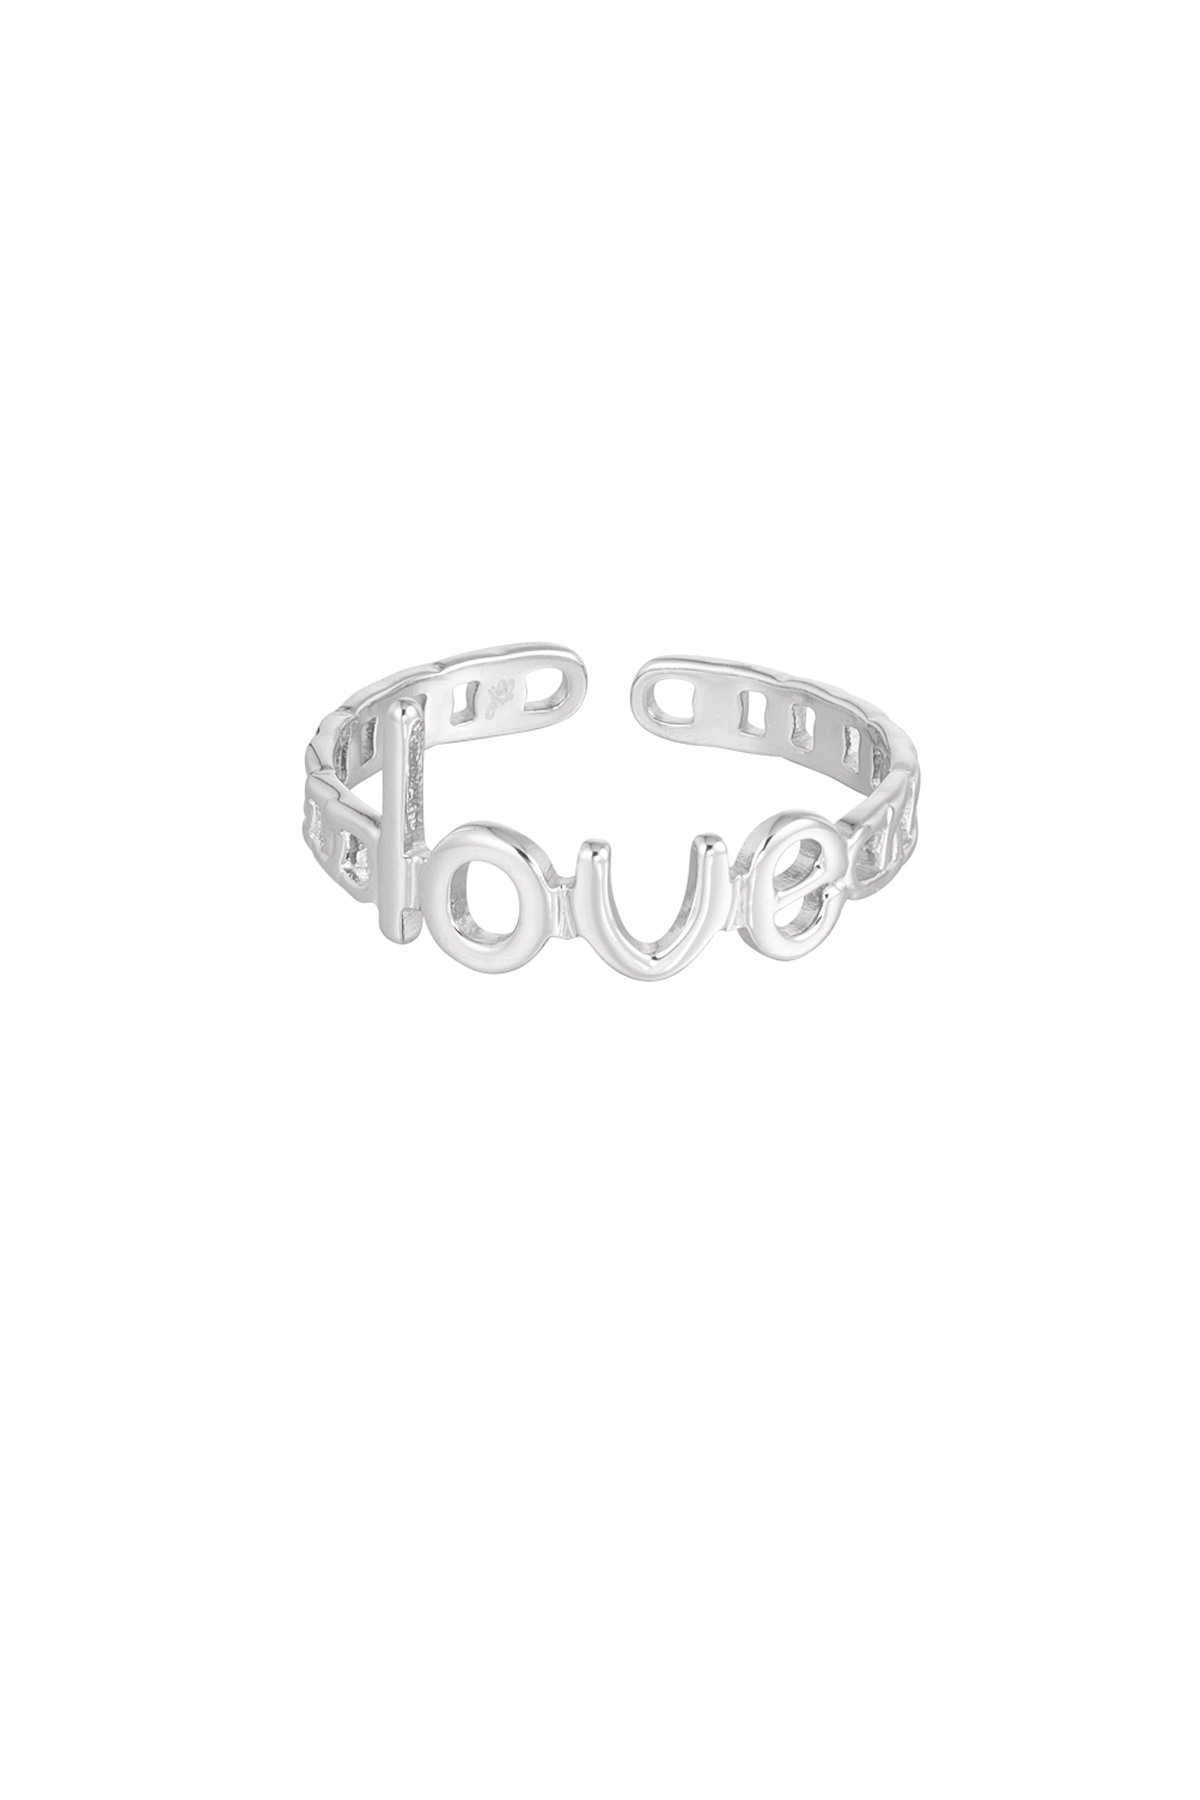 Ring verbindet Liebe - Silber